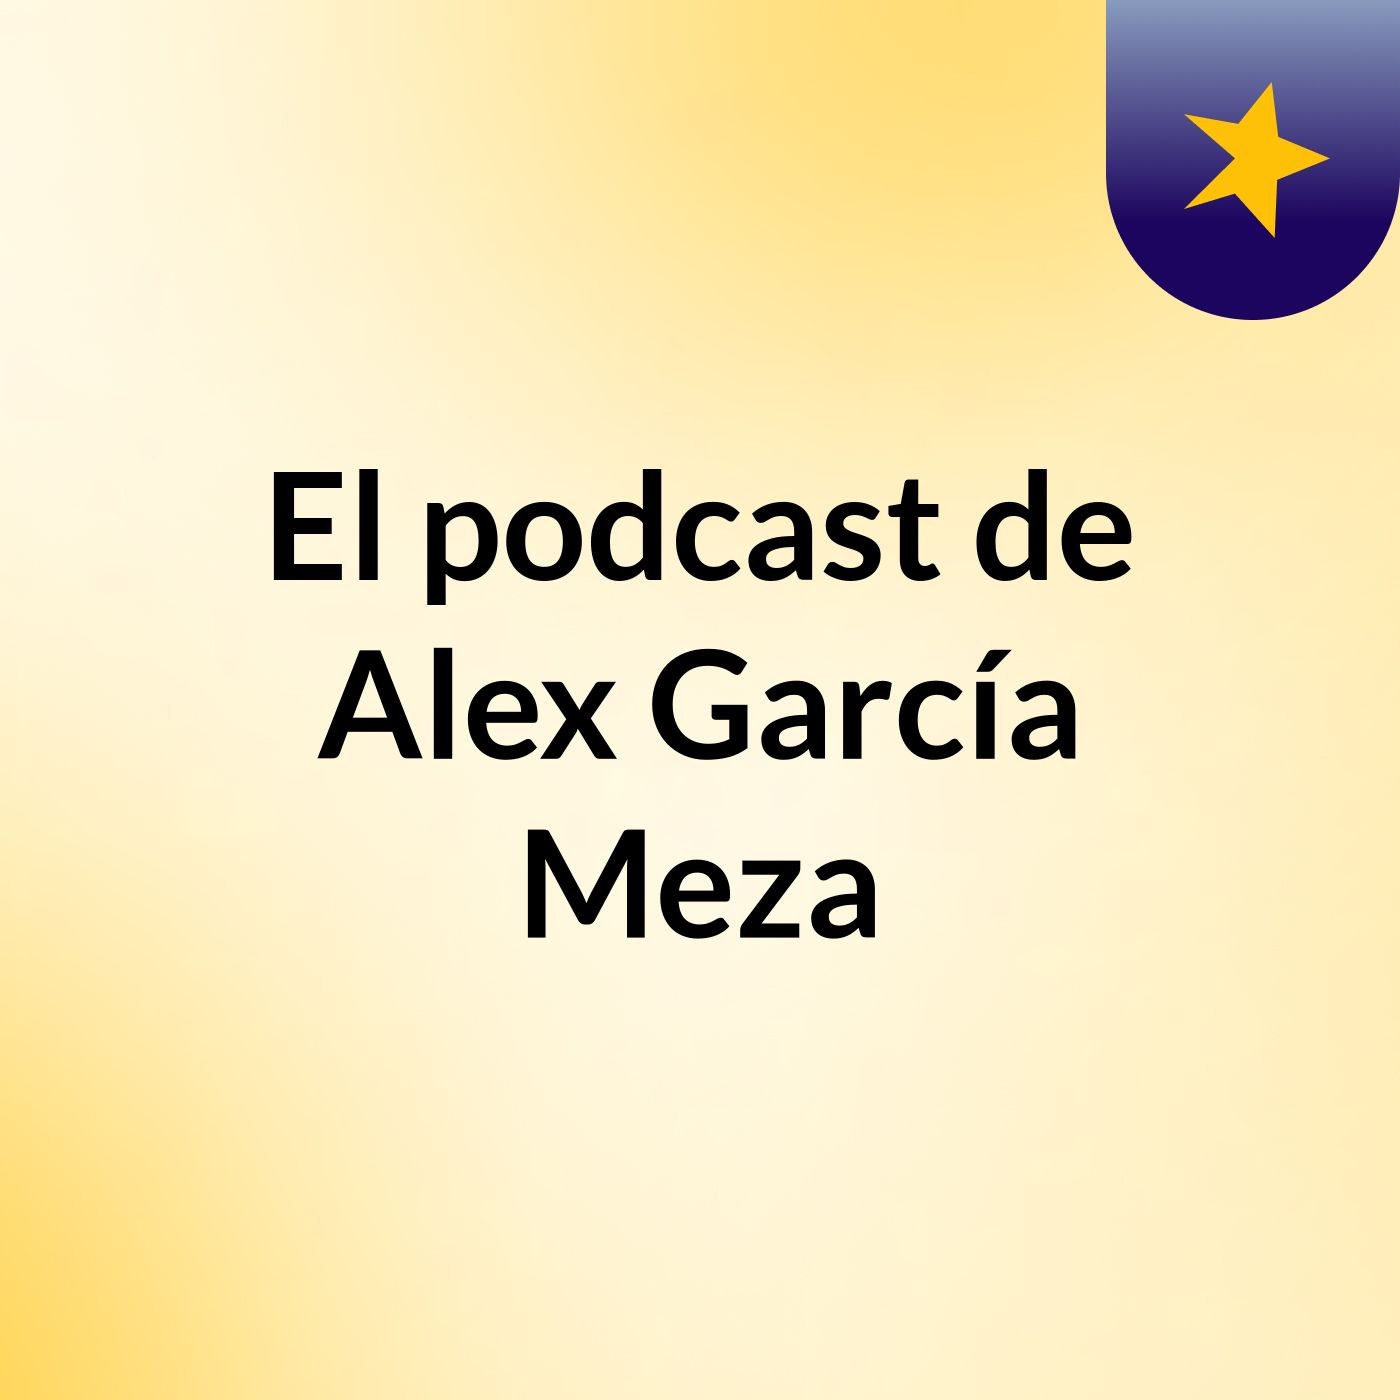 El podcast de Alex García Meza